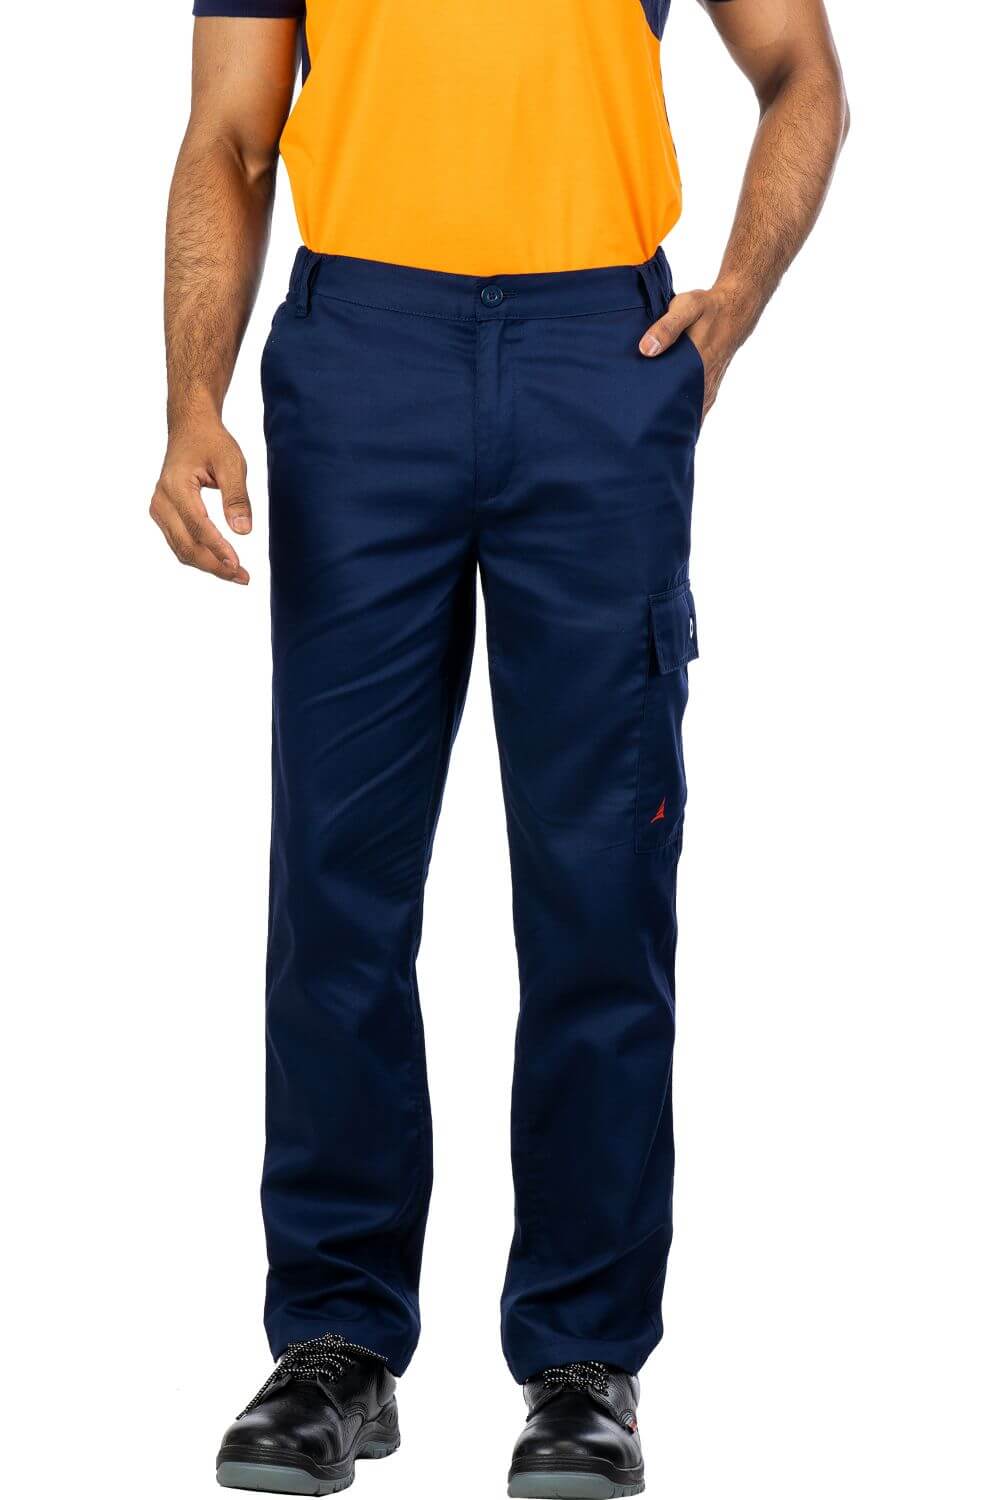 Navy Blue Cotton Blend Work Trouser